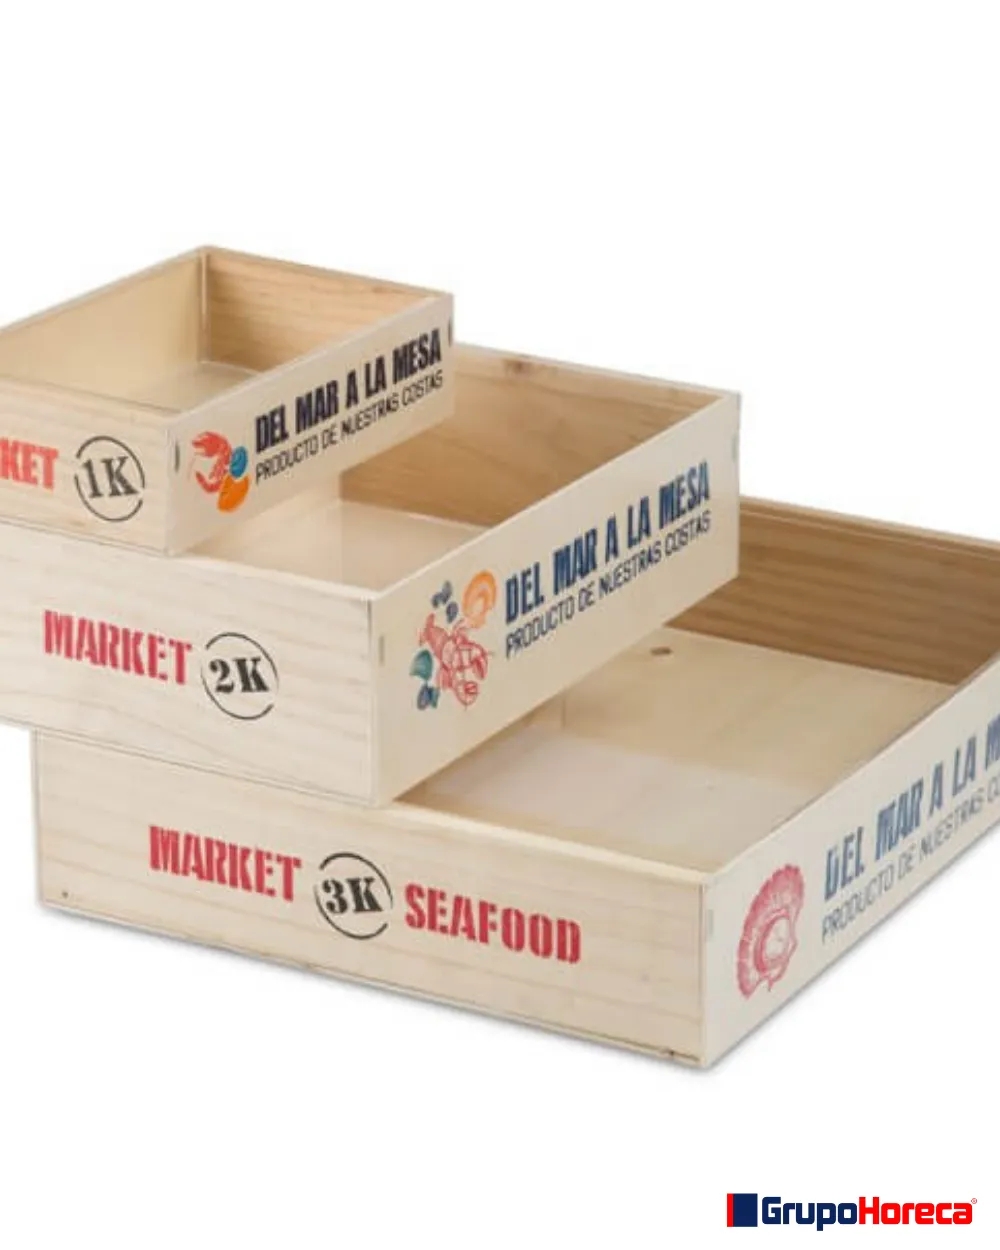 Caja natural grande  Venta de todo tipo de cajas de madera online